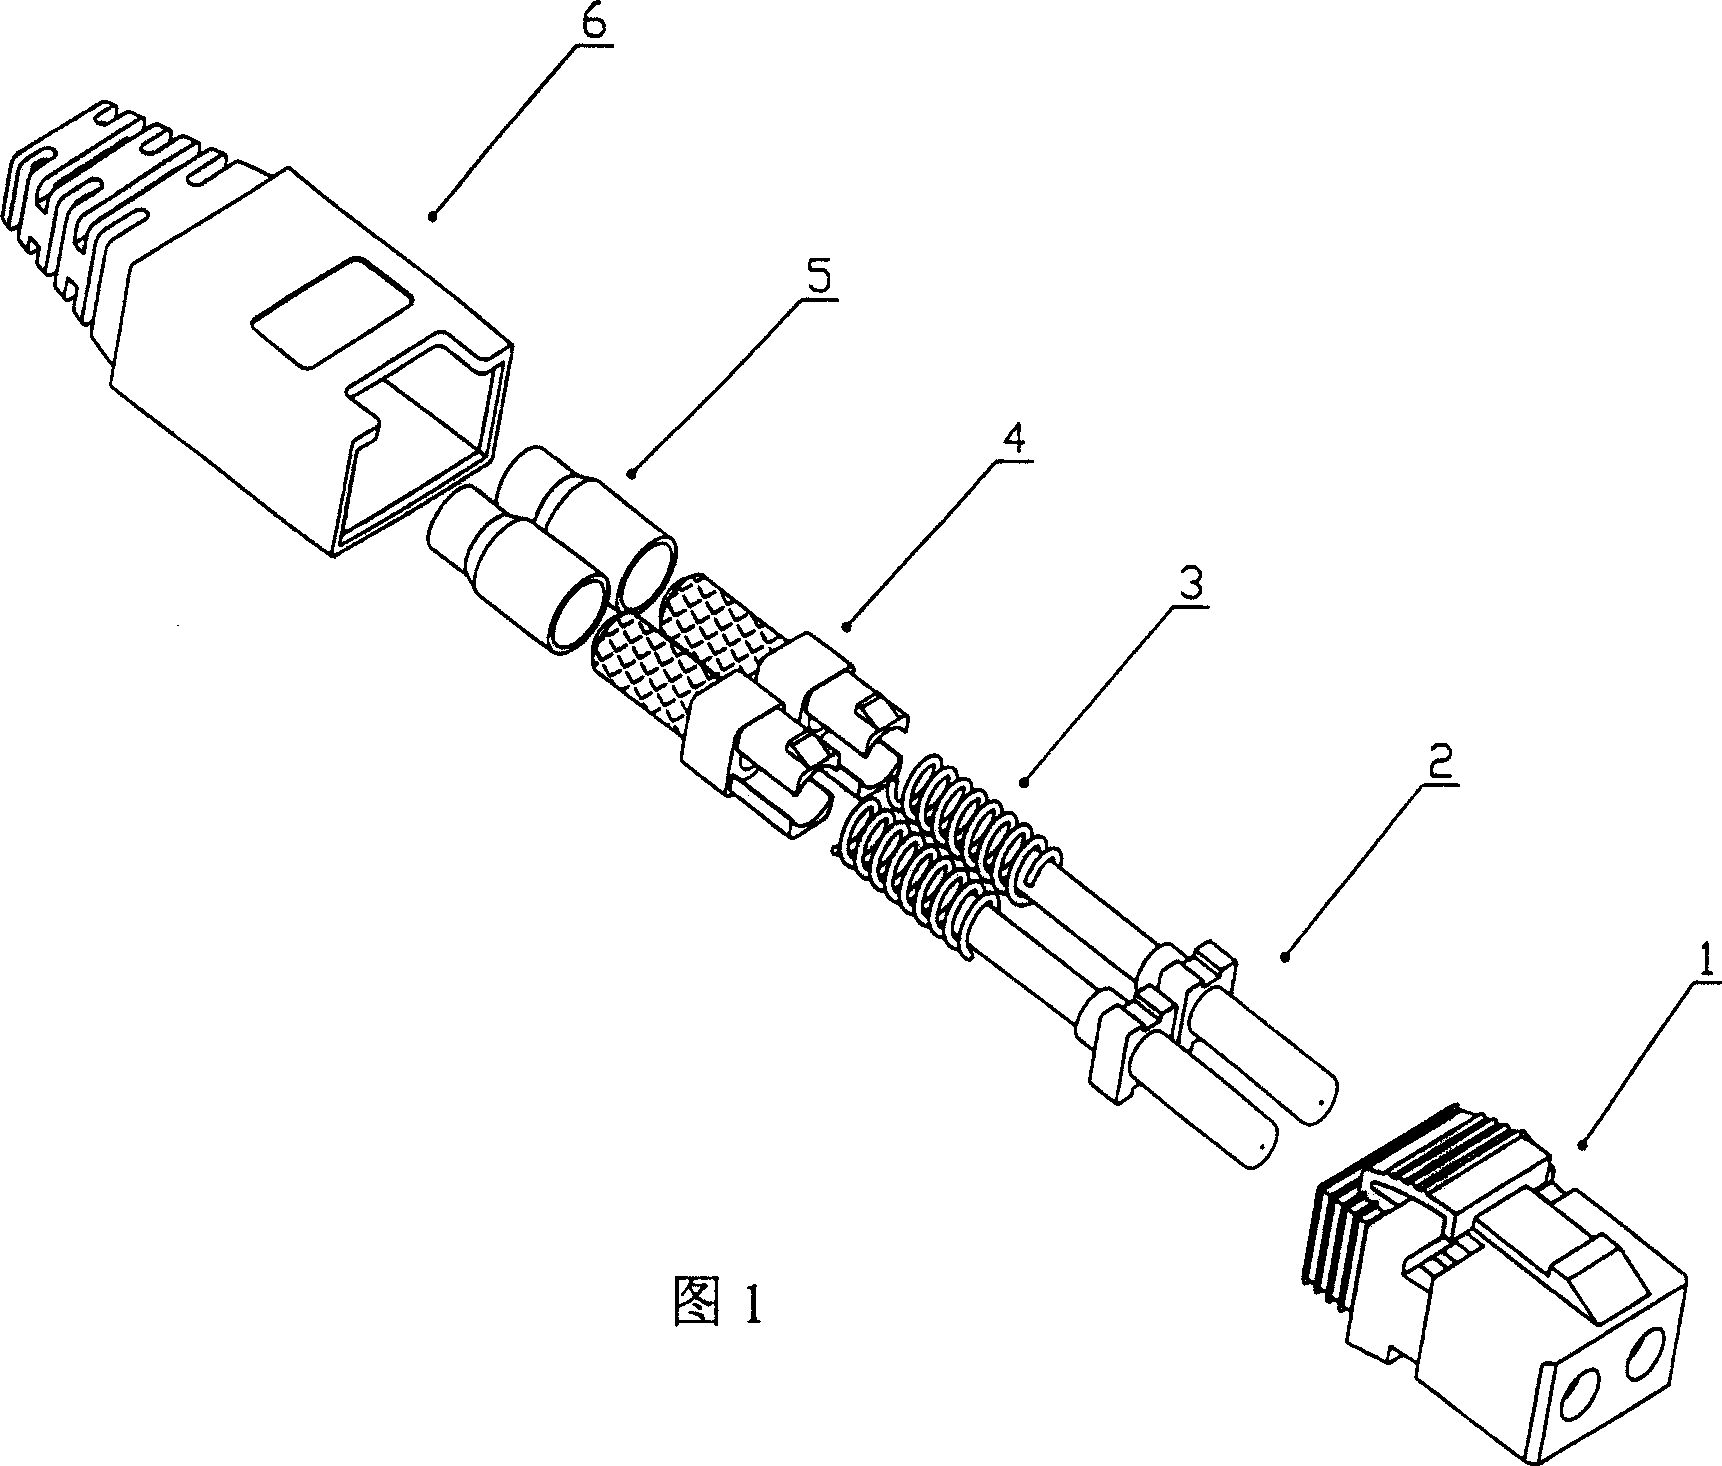 A connecting apparatus for optical fibre